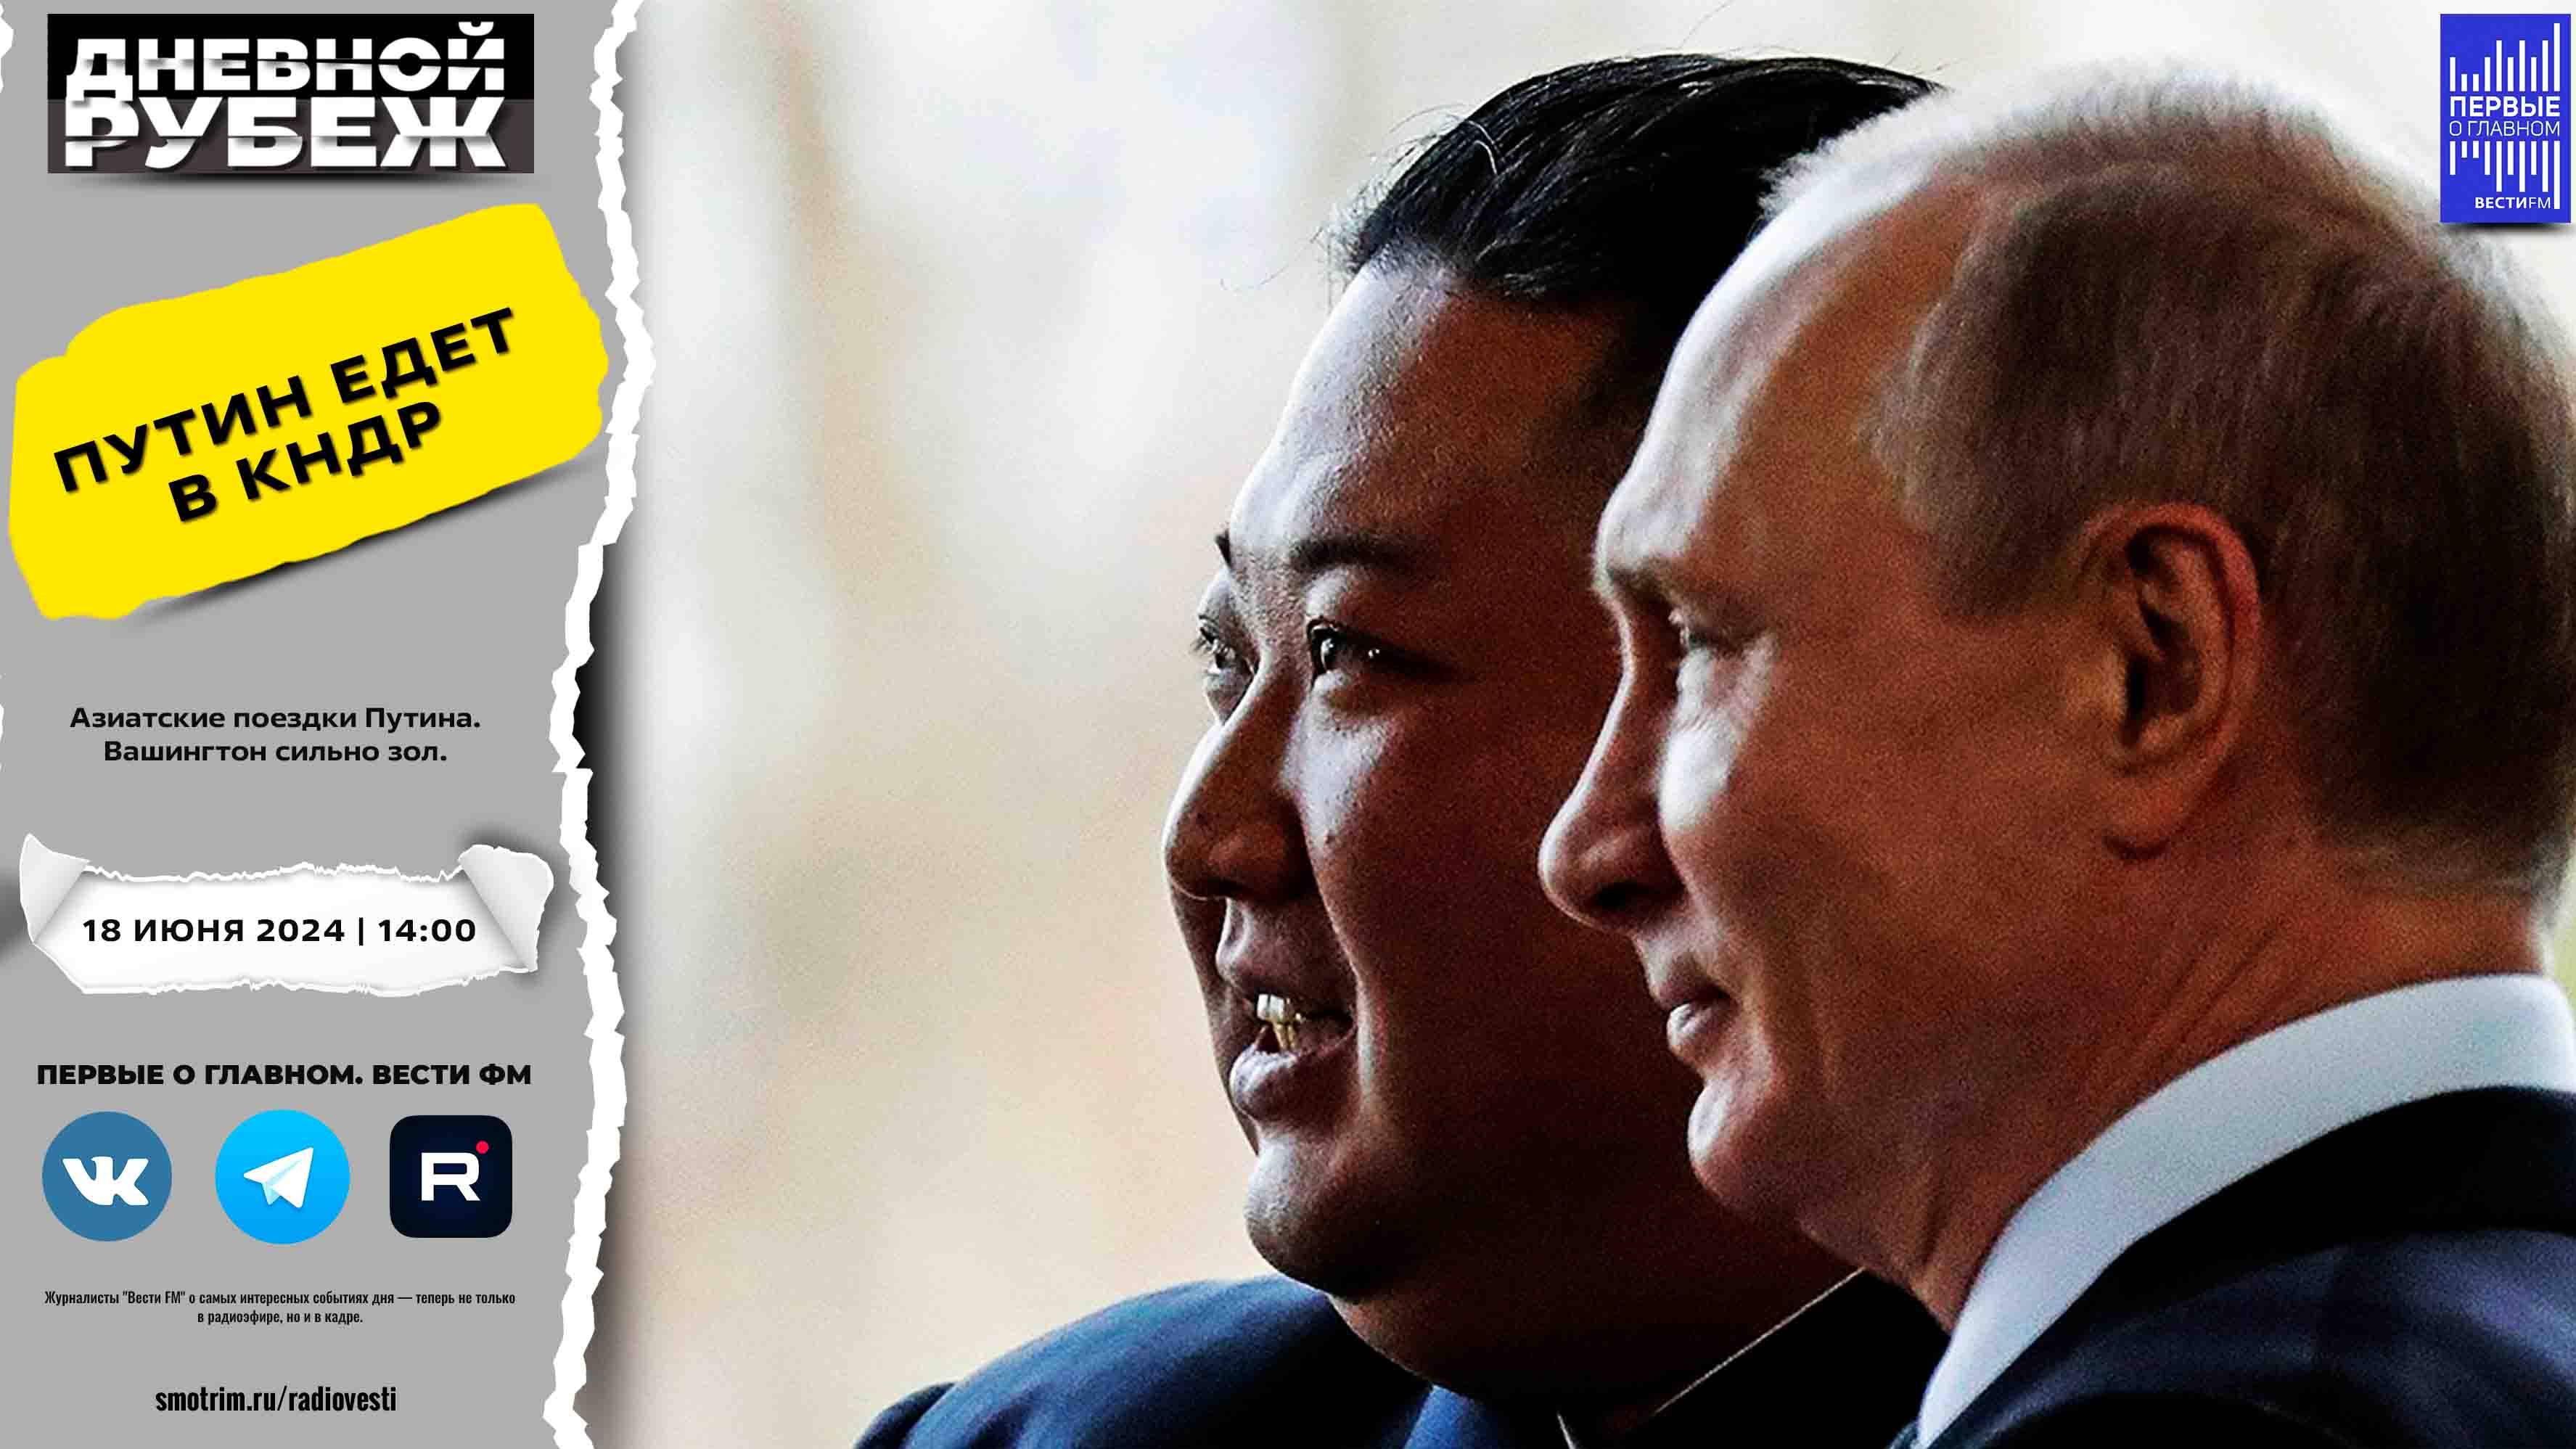 Азиатские поездки Путина.  Вашингтон сильно зол.